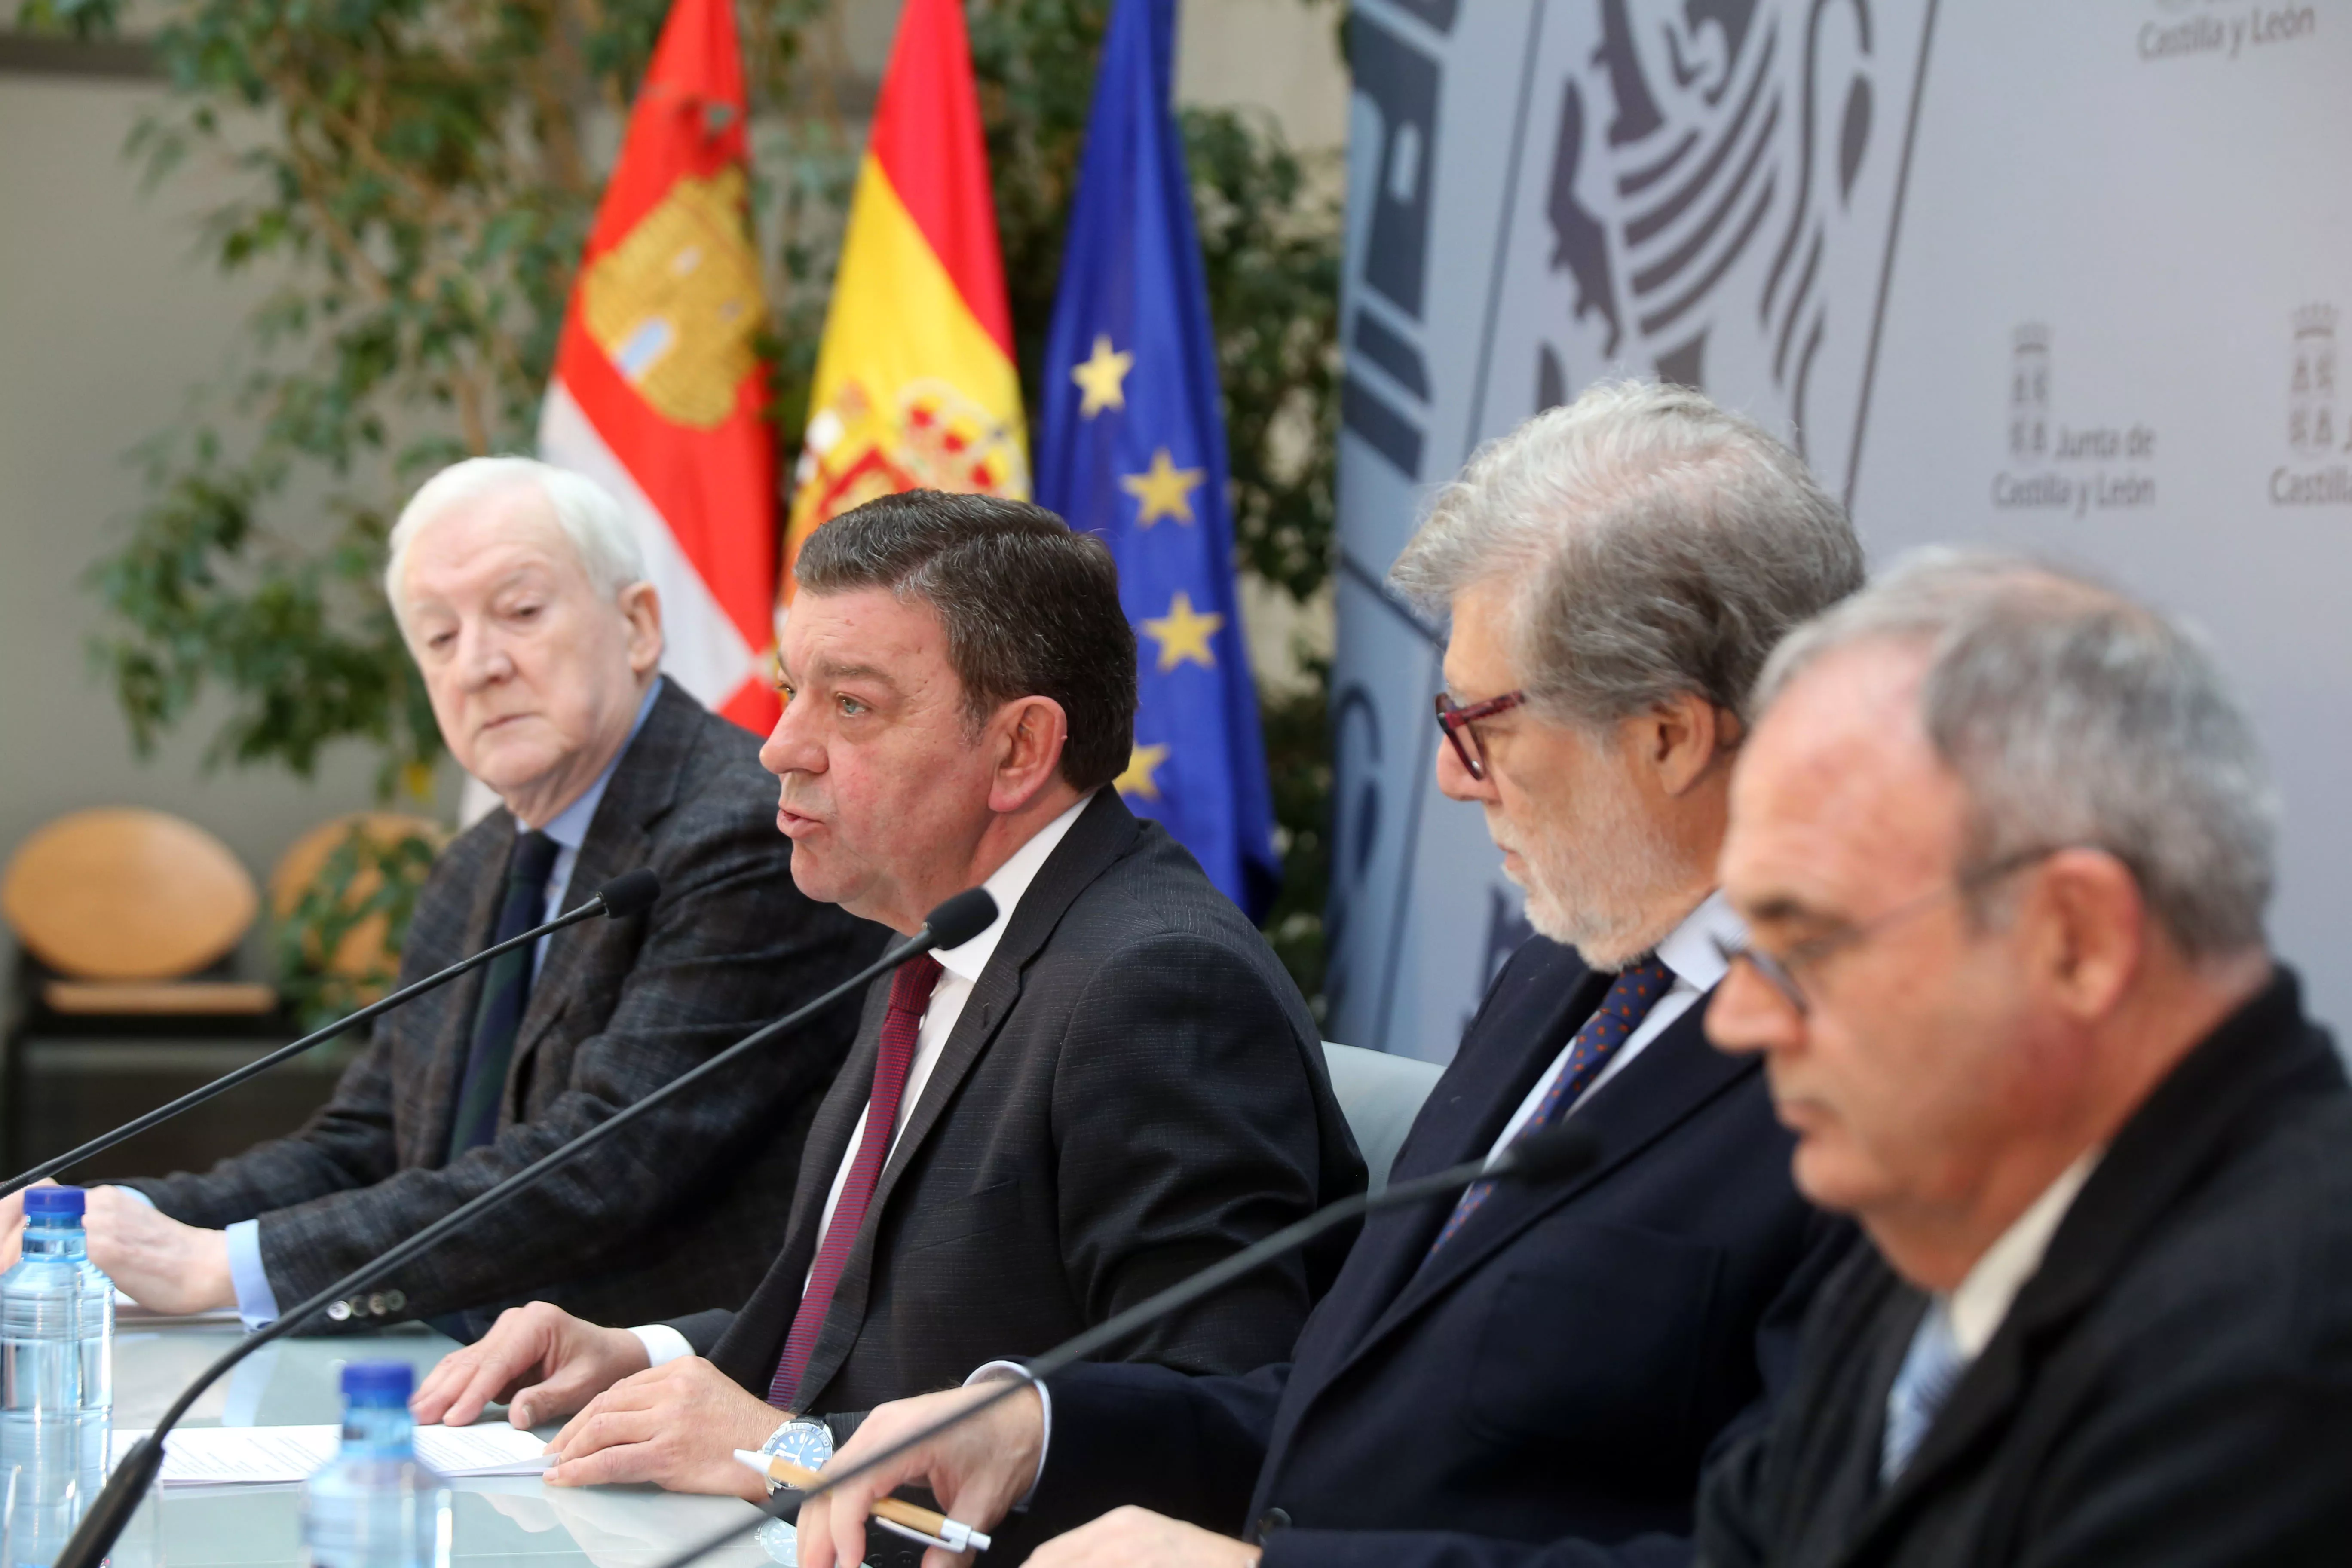 Los castellanos y leoneses en el exterior recibirán 5.000 euros si deciden regresar a trabajar a la Comunidad